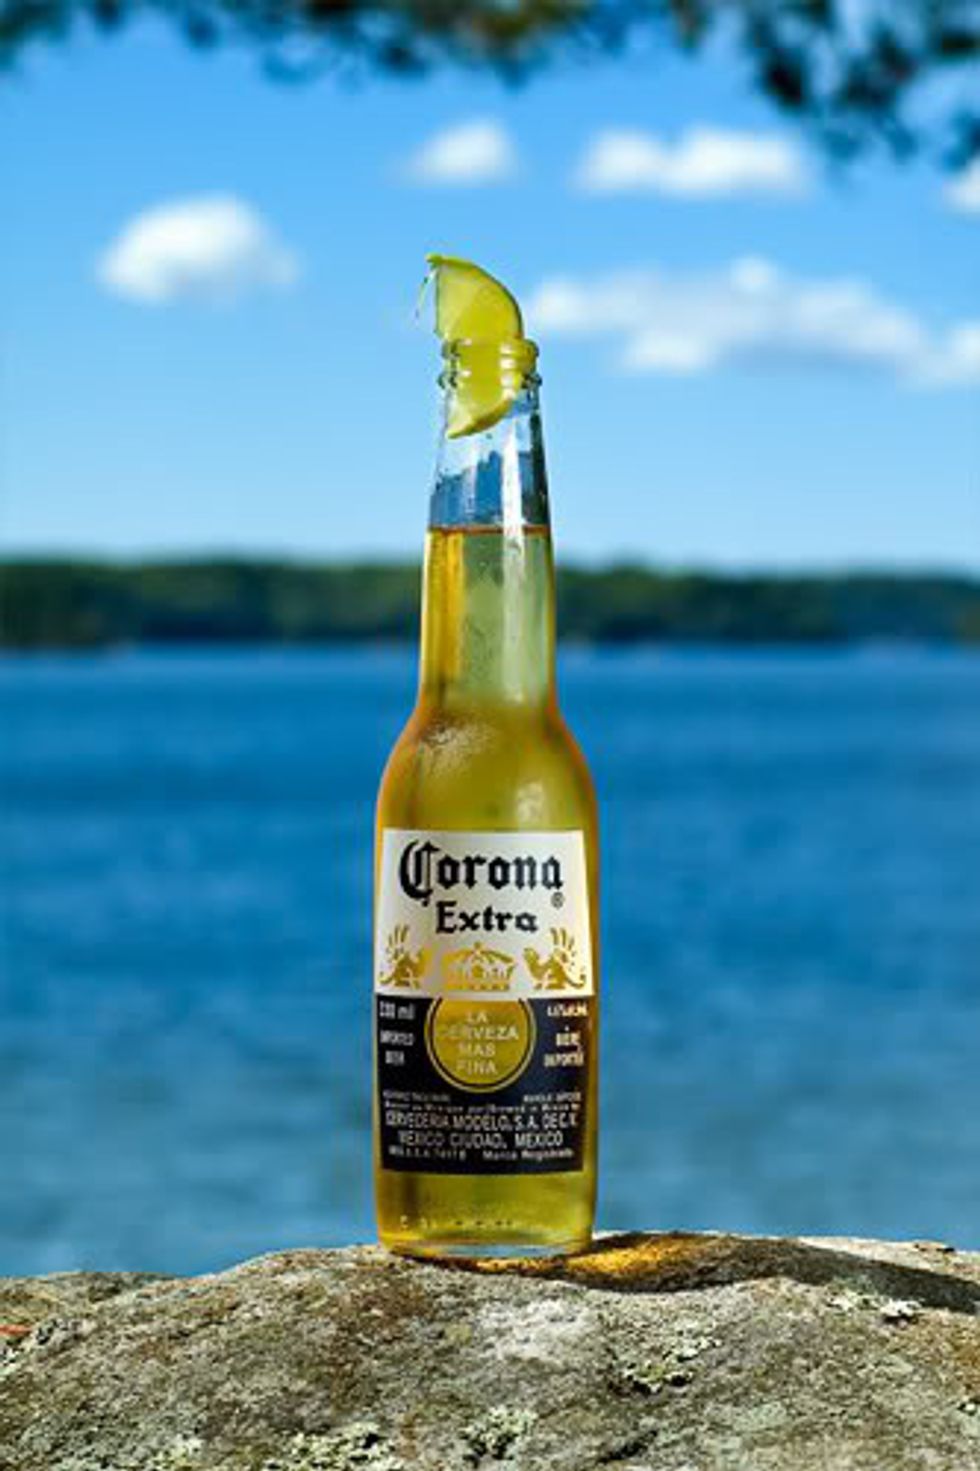 Как пить пиво корона. Corona Extra с лаймом. Сибирская корона Экстра пиво. Corona Extra с лимоном. Пиво корона Экстра с лаймом.